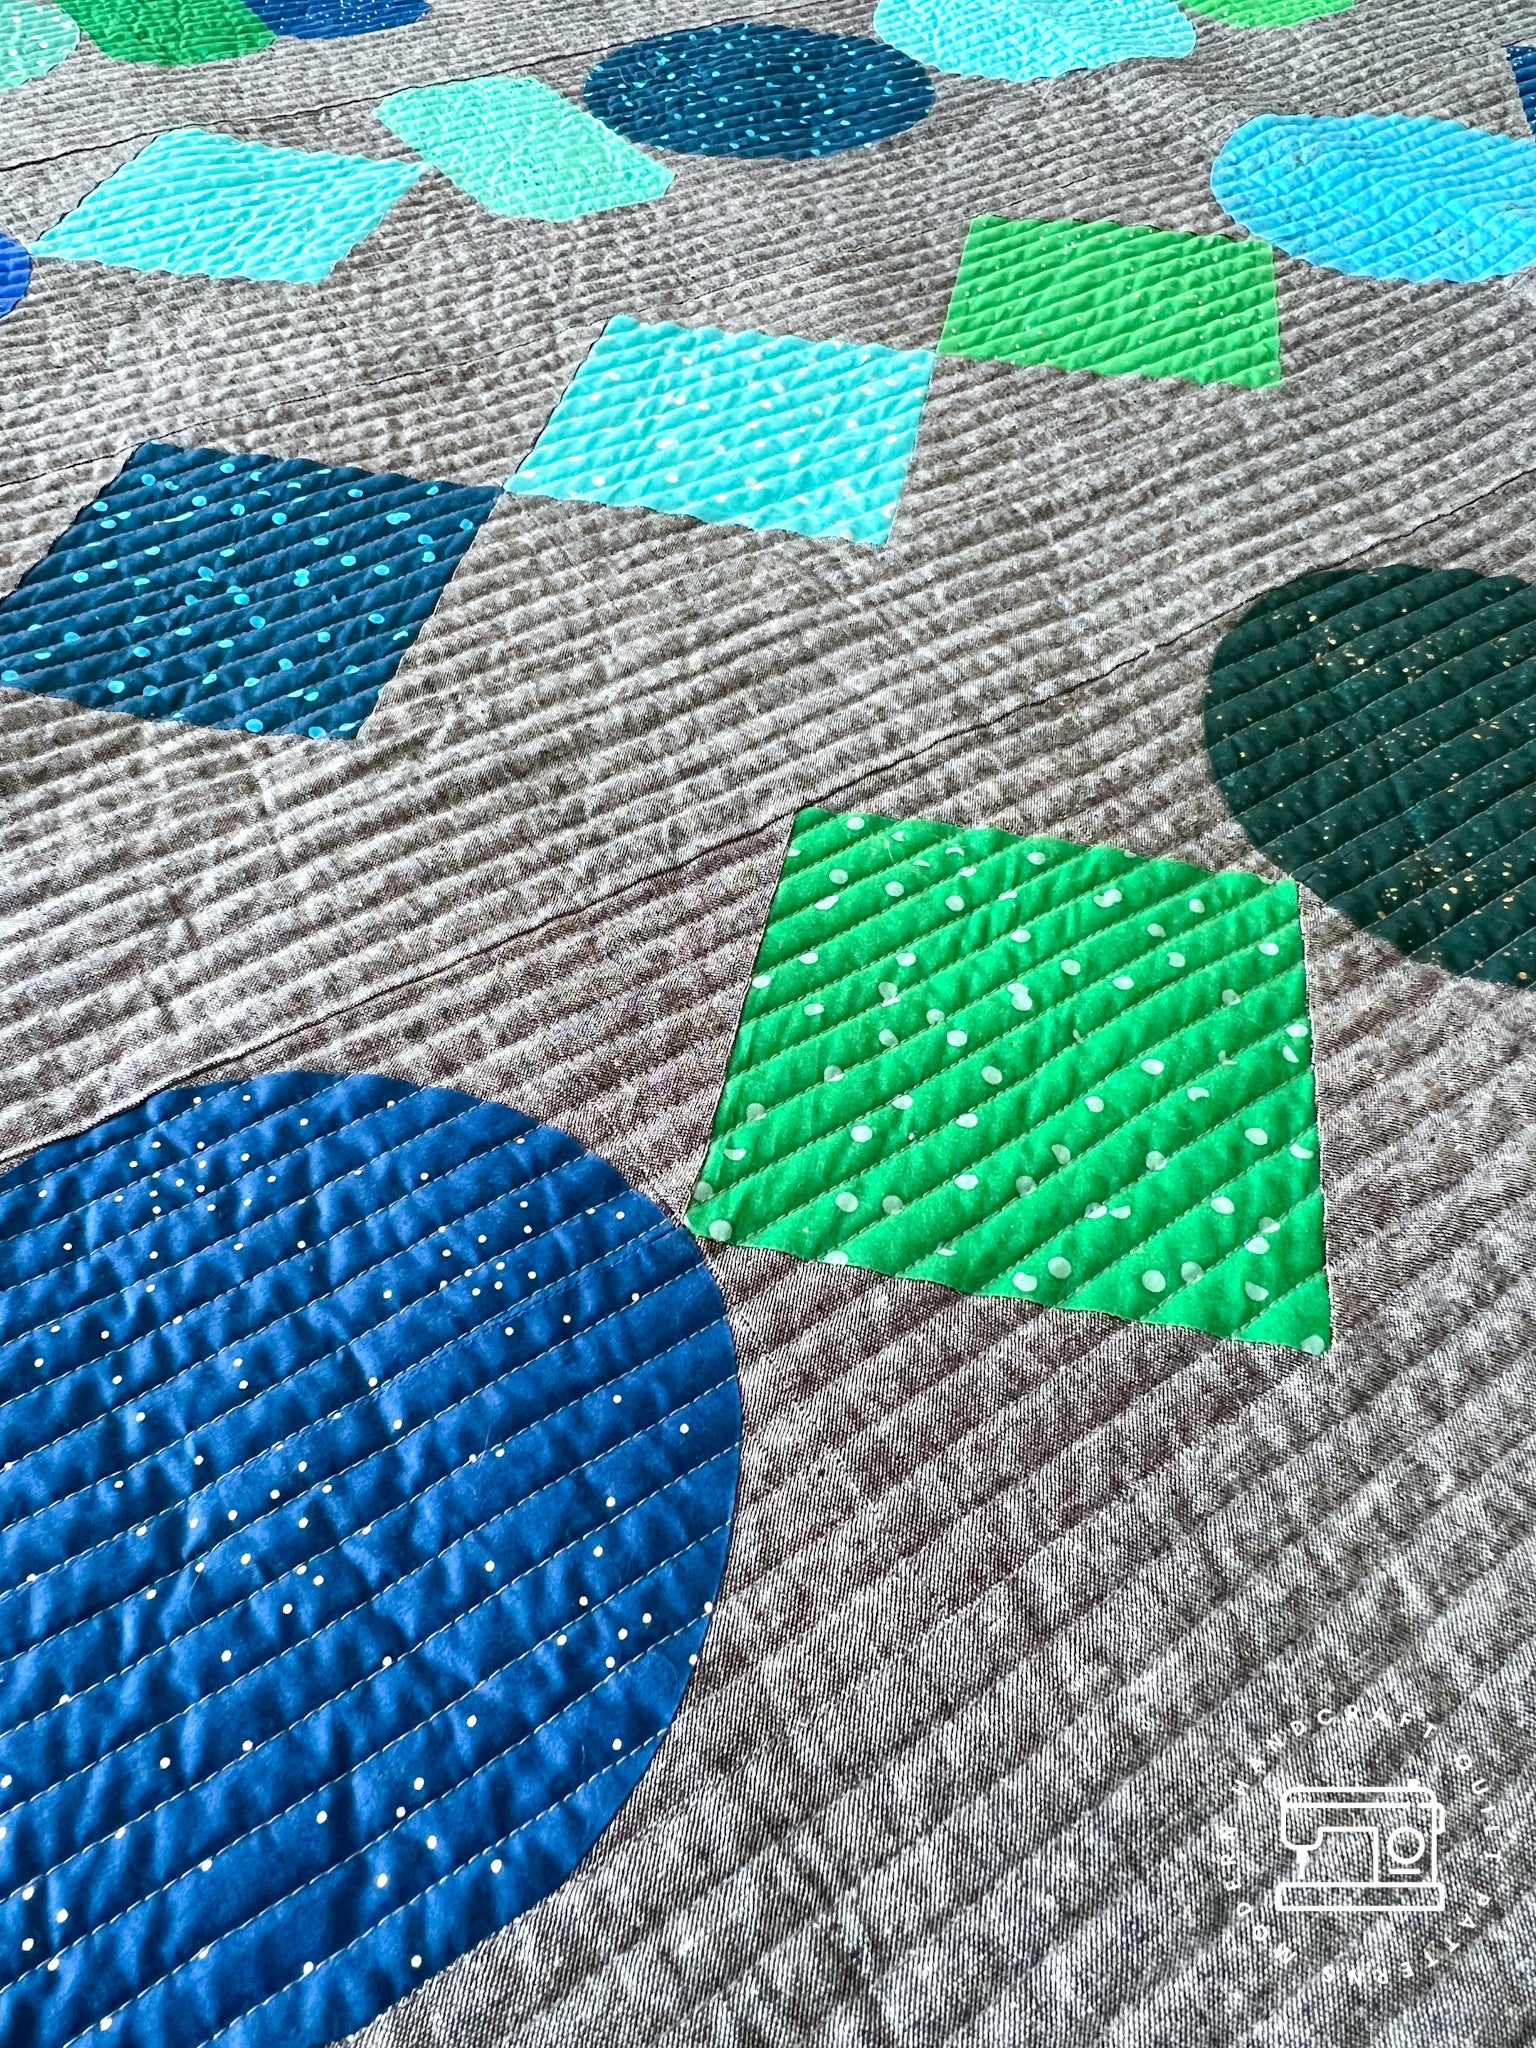 Beads Quilt / Blue + Green Essex Version - Modernhandcraft.com